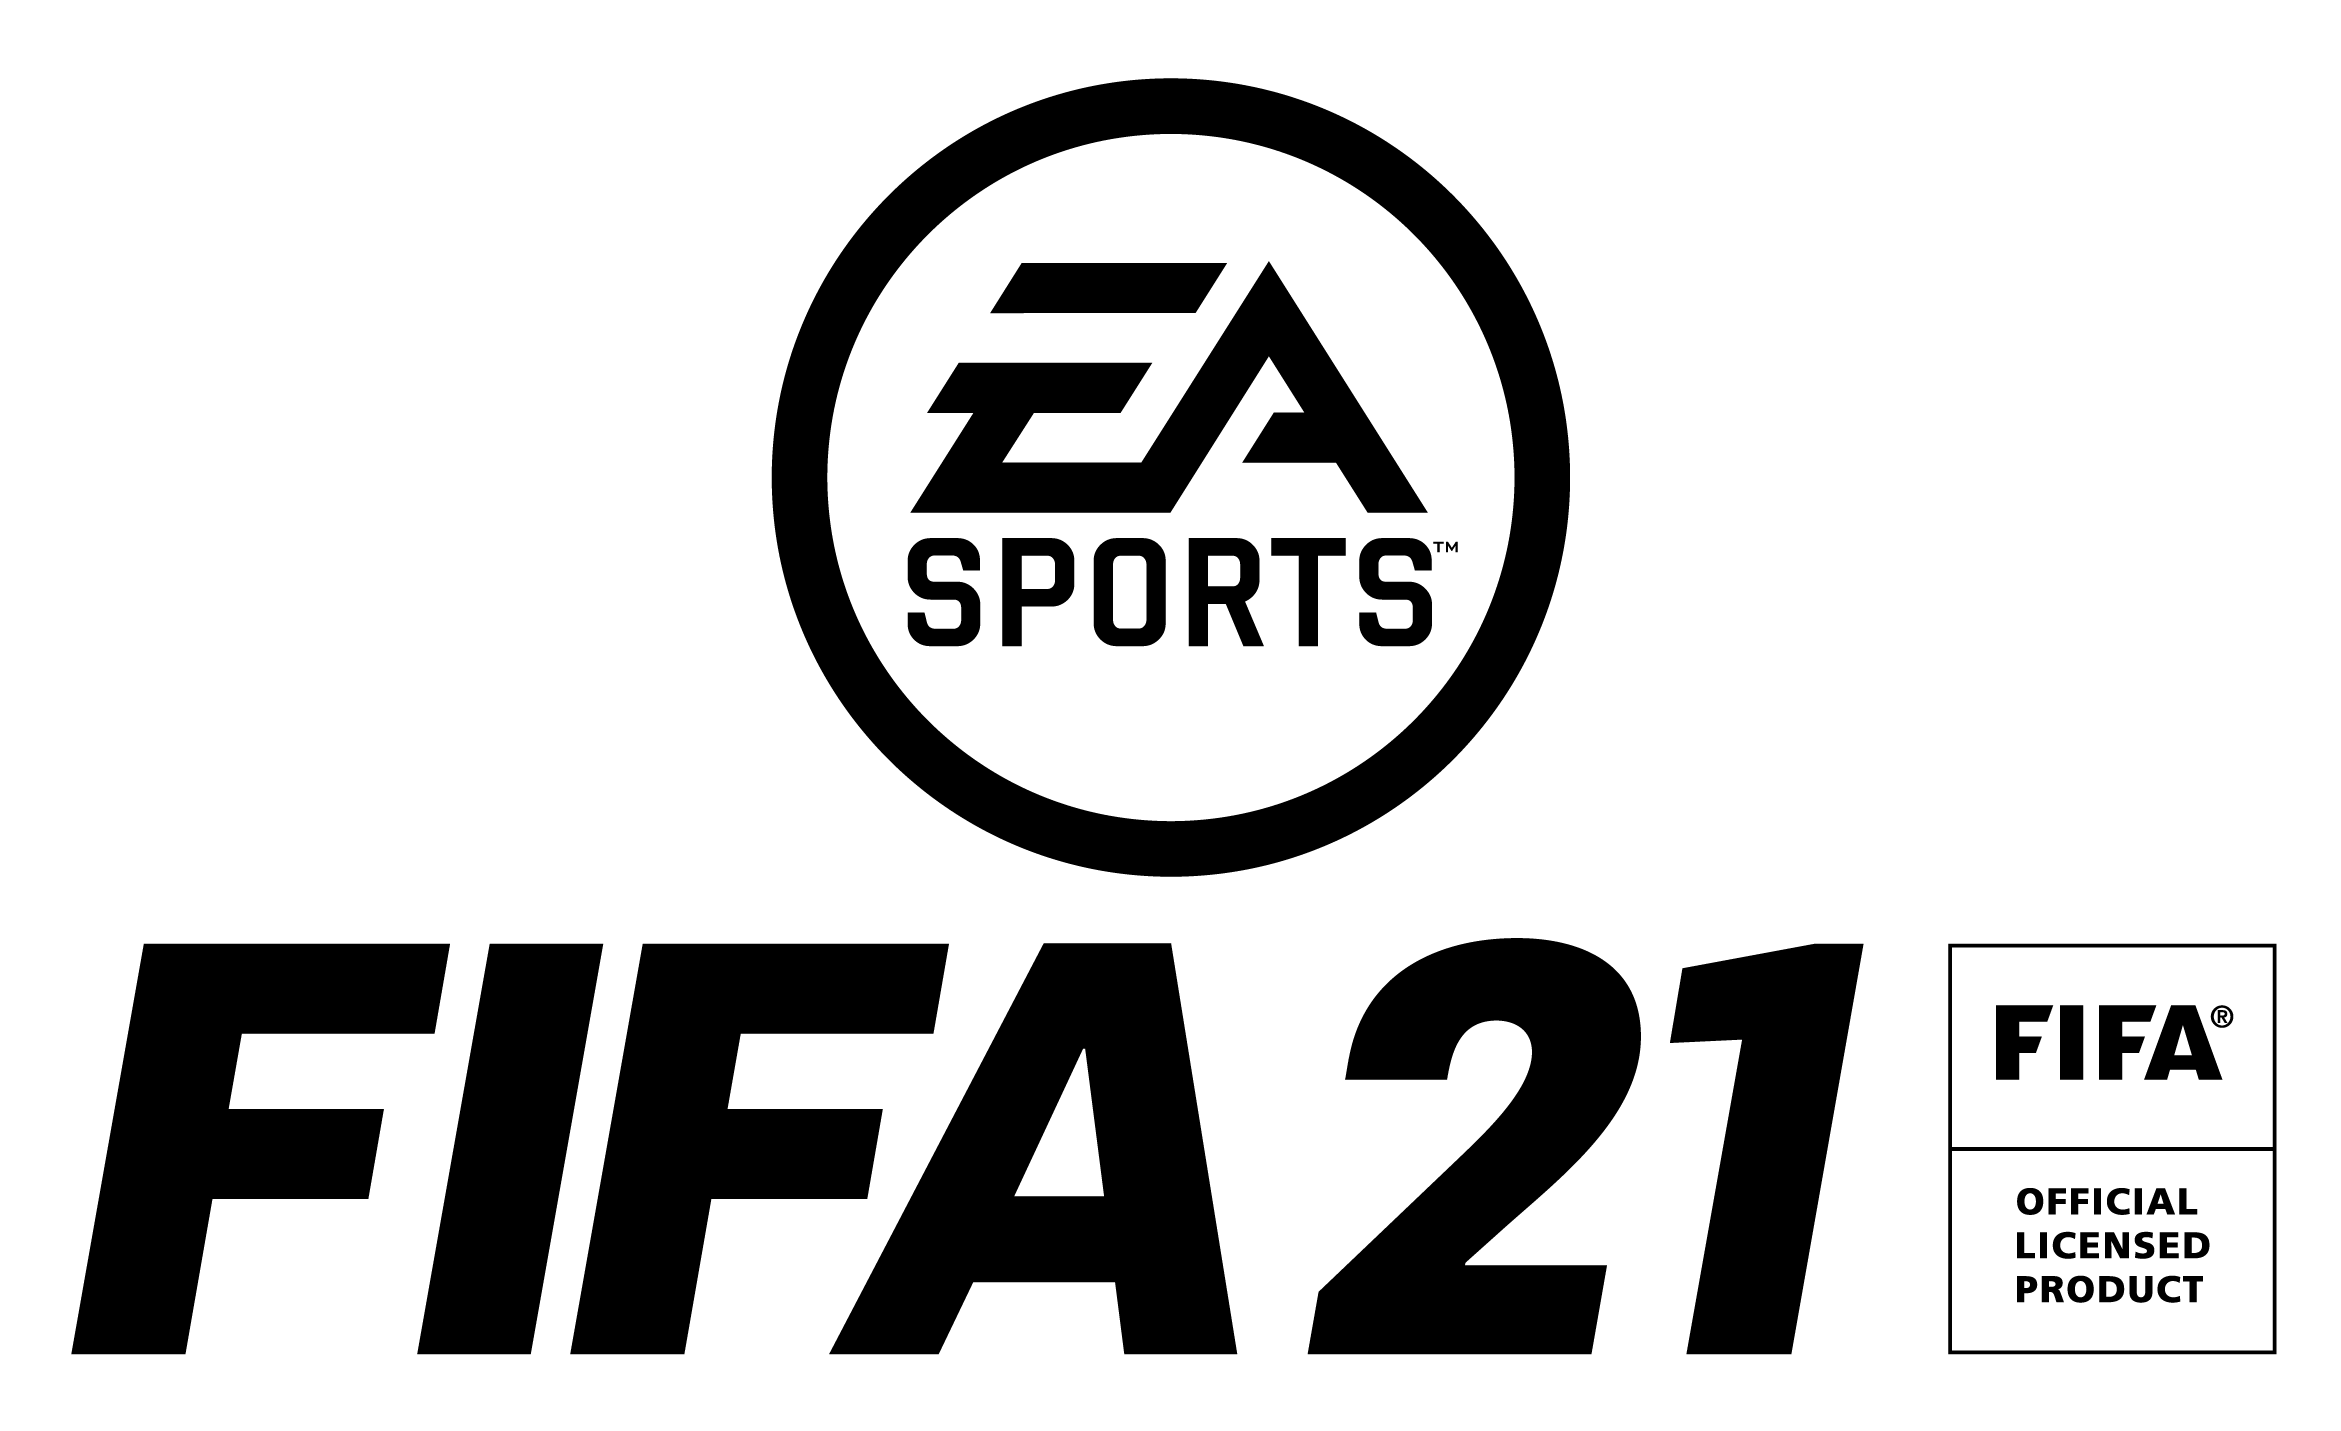 Fifa 21 10月9日 金 発売決定 Ps5 版への無償アップグレードに対応 株式会社セガのプレスリリース